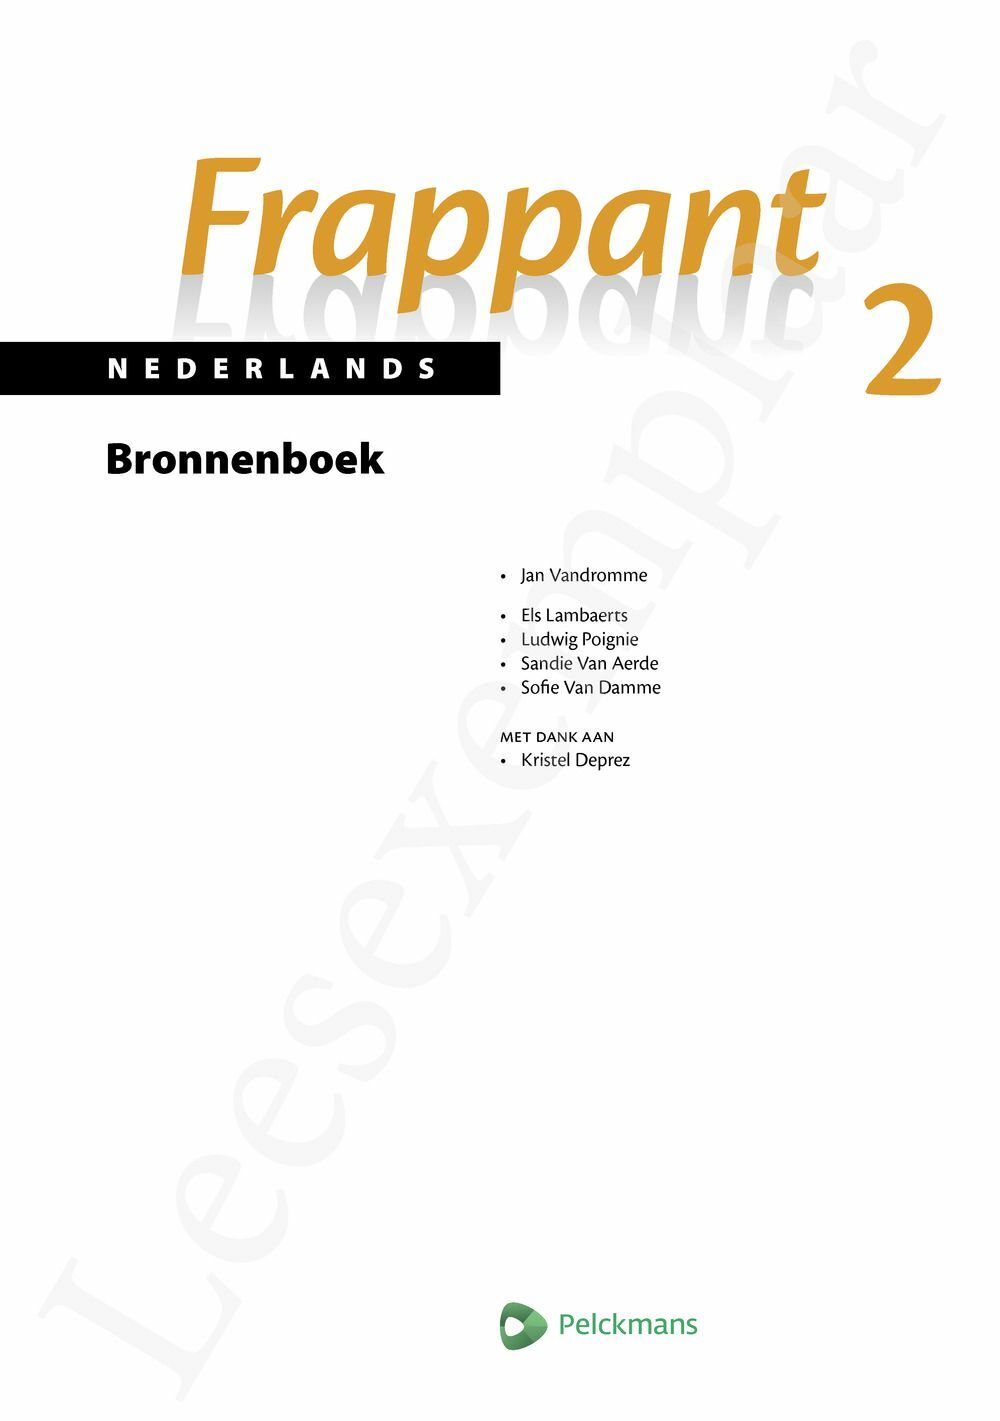 Preview: Frappant Nederlands 2 Bronnenboek